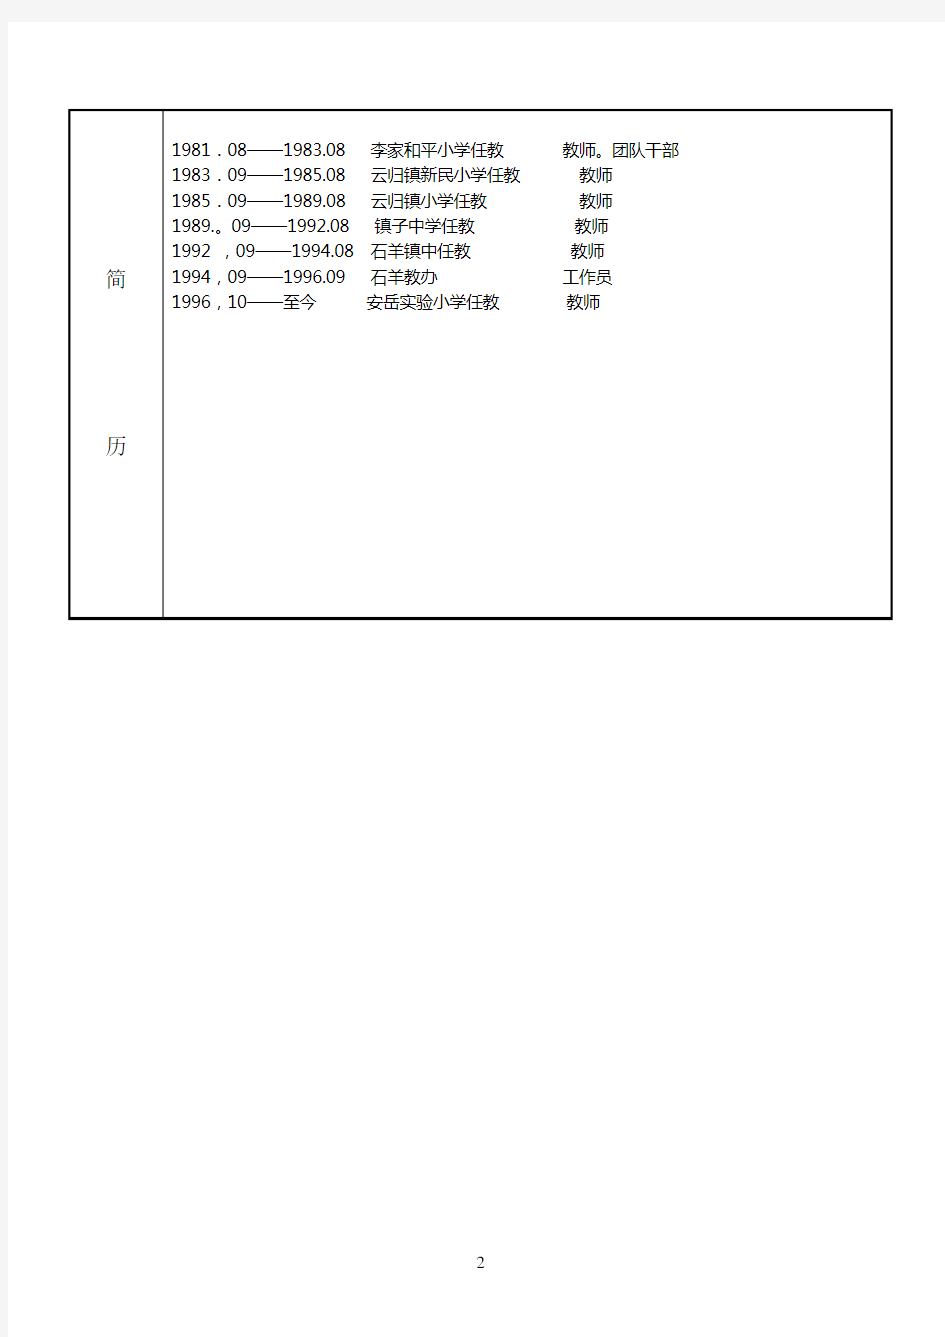 人事档案专项审核表 (1)